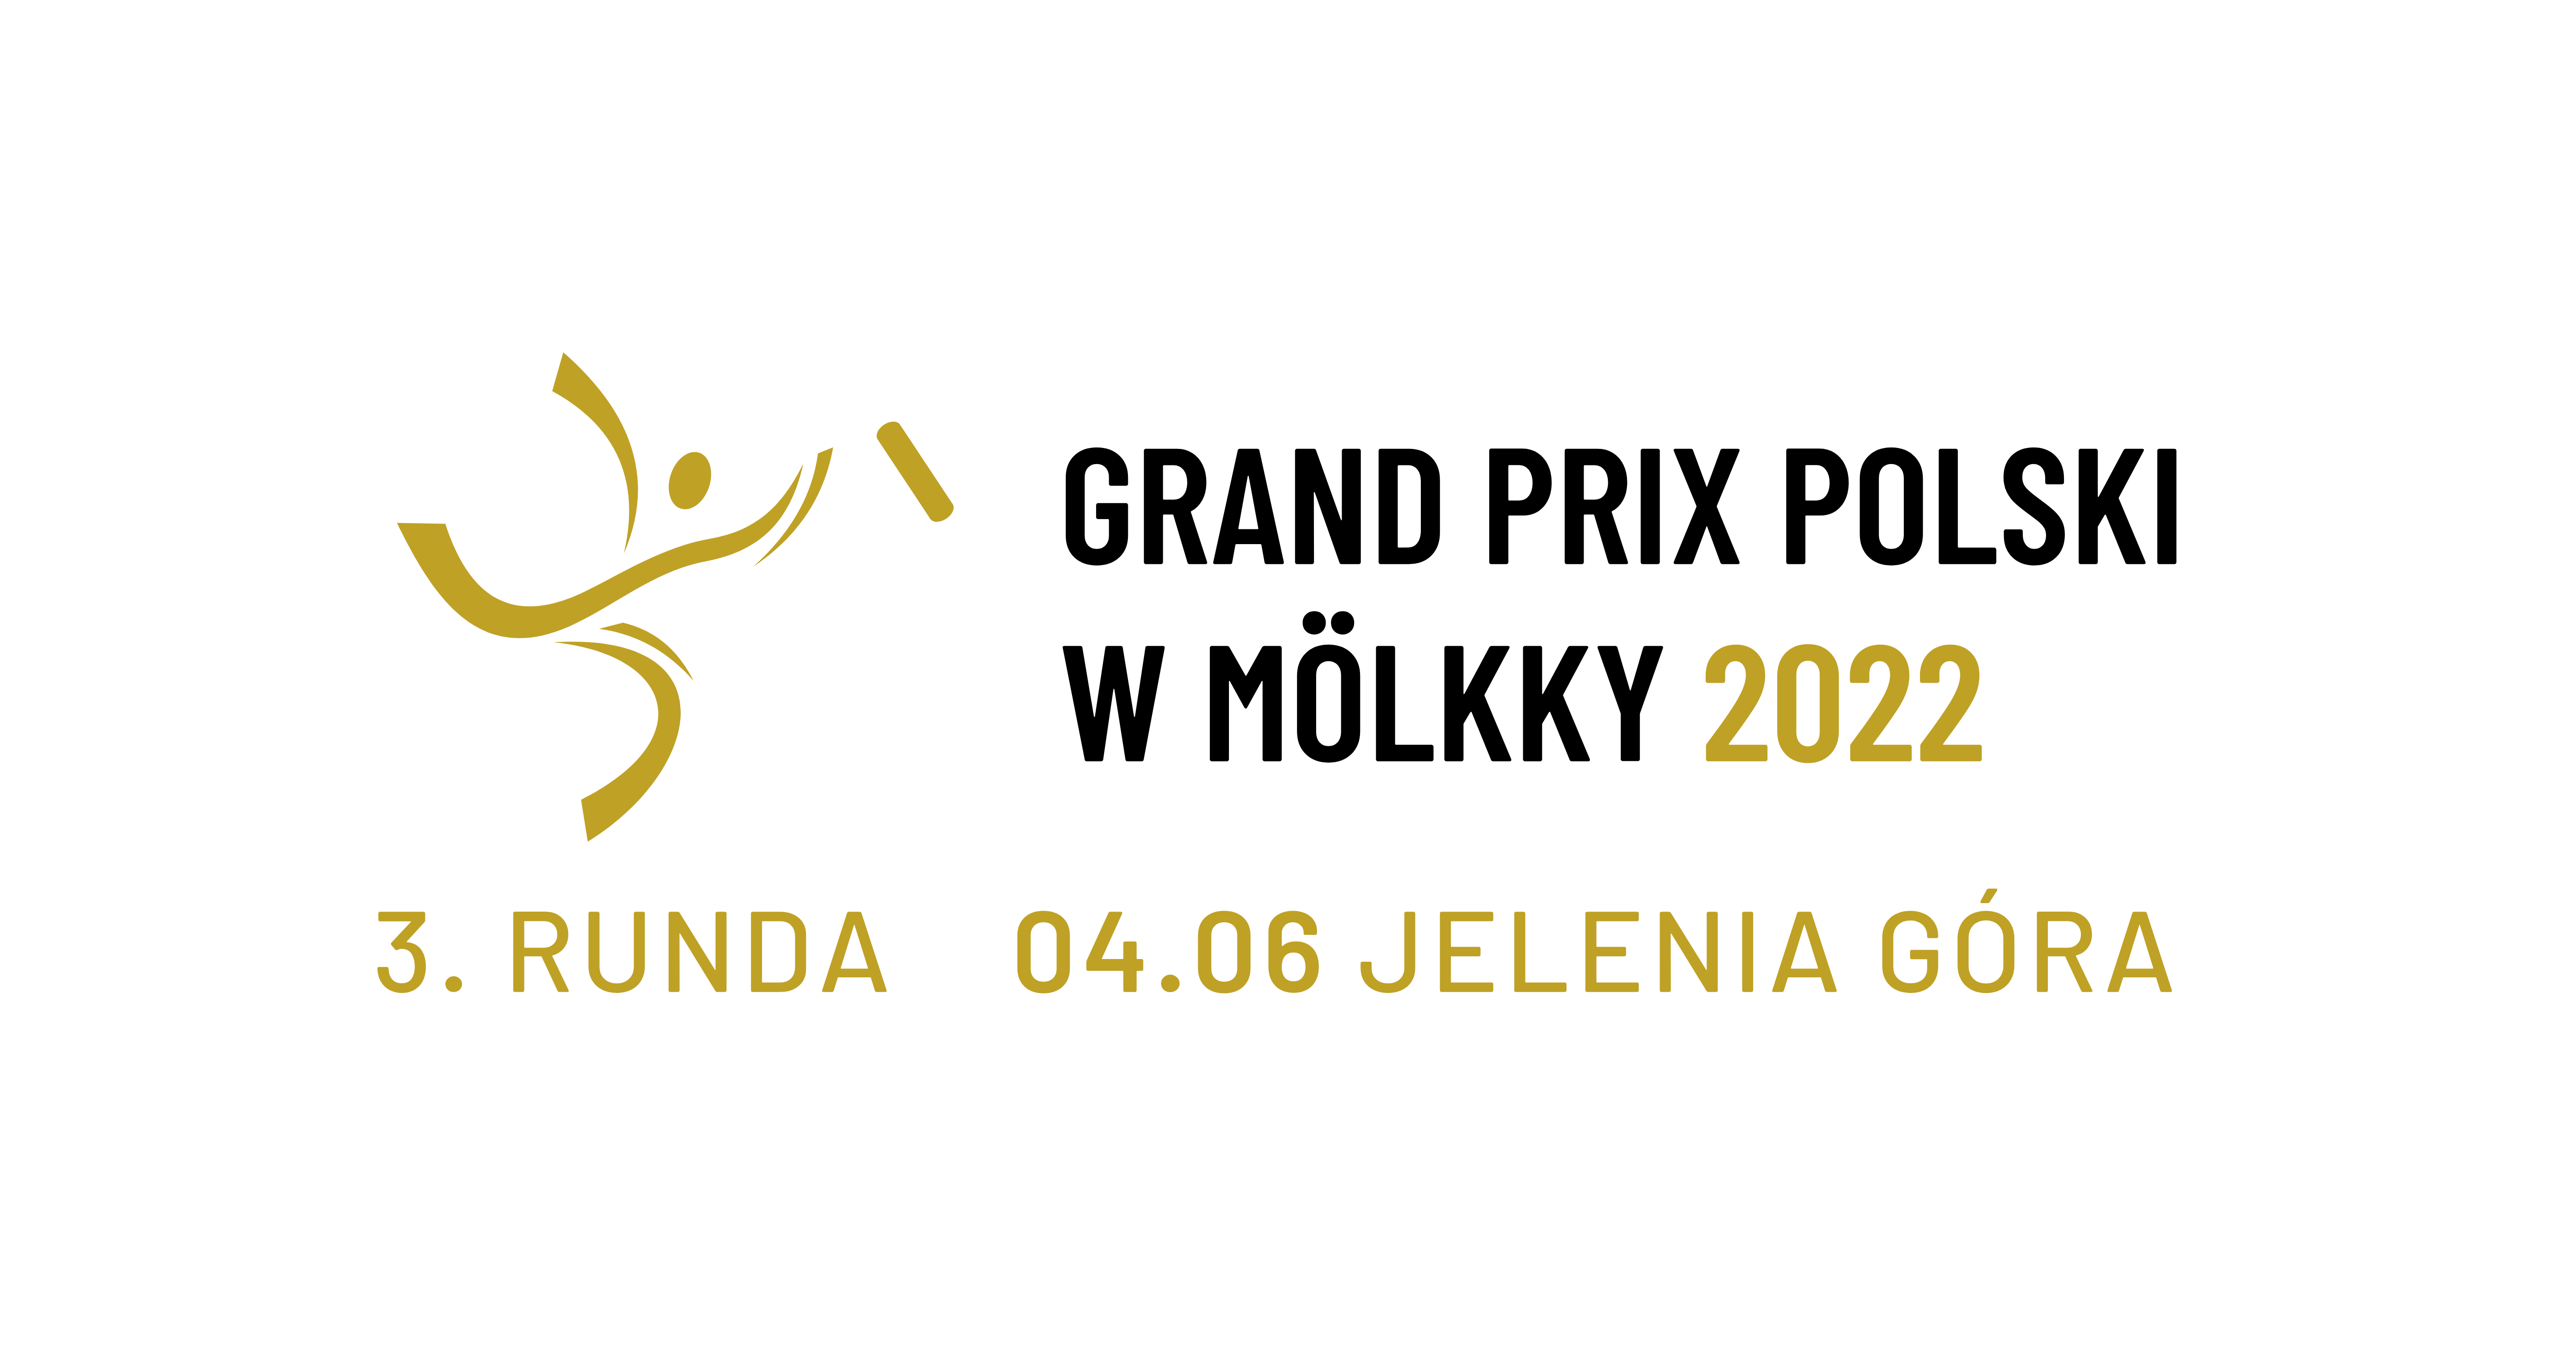 Grand Prix of Poland - event 3/6